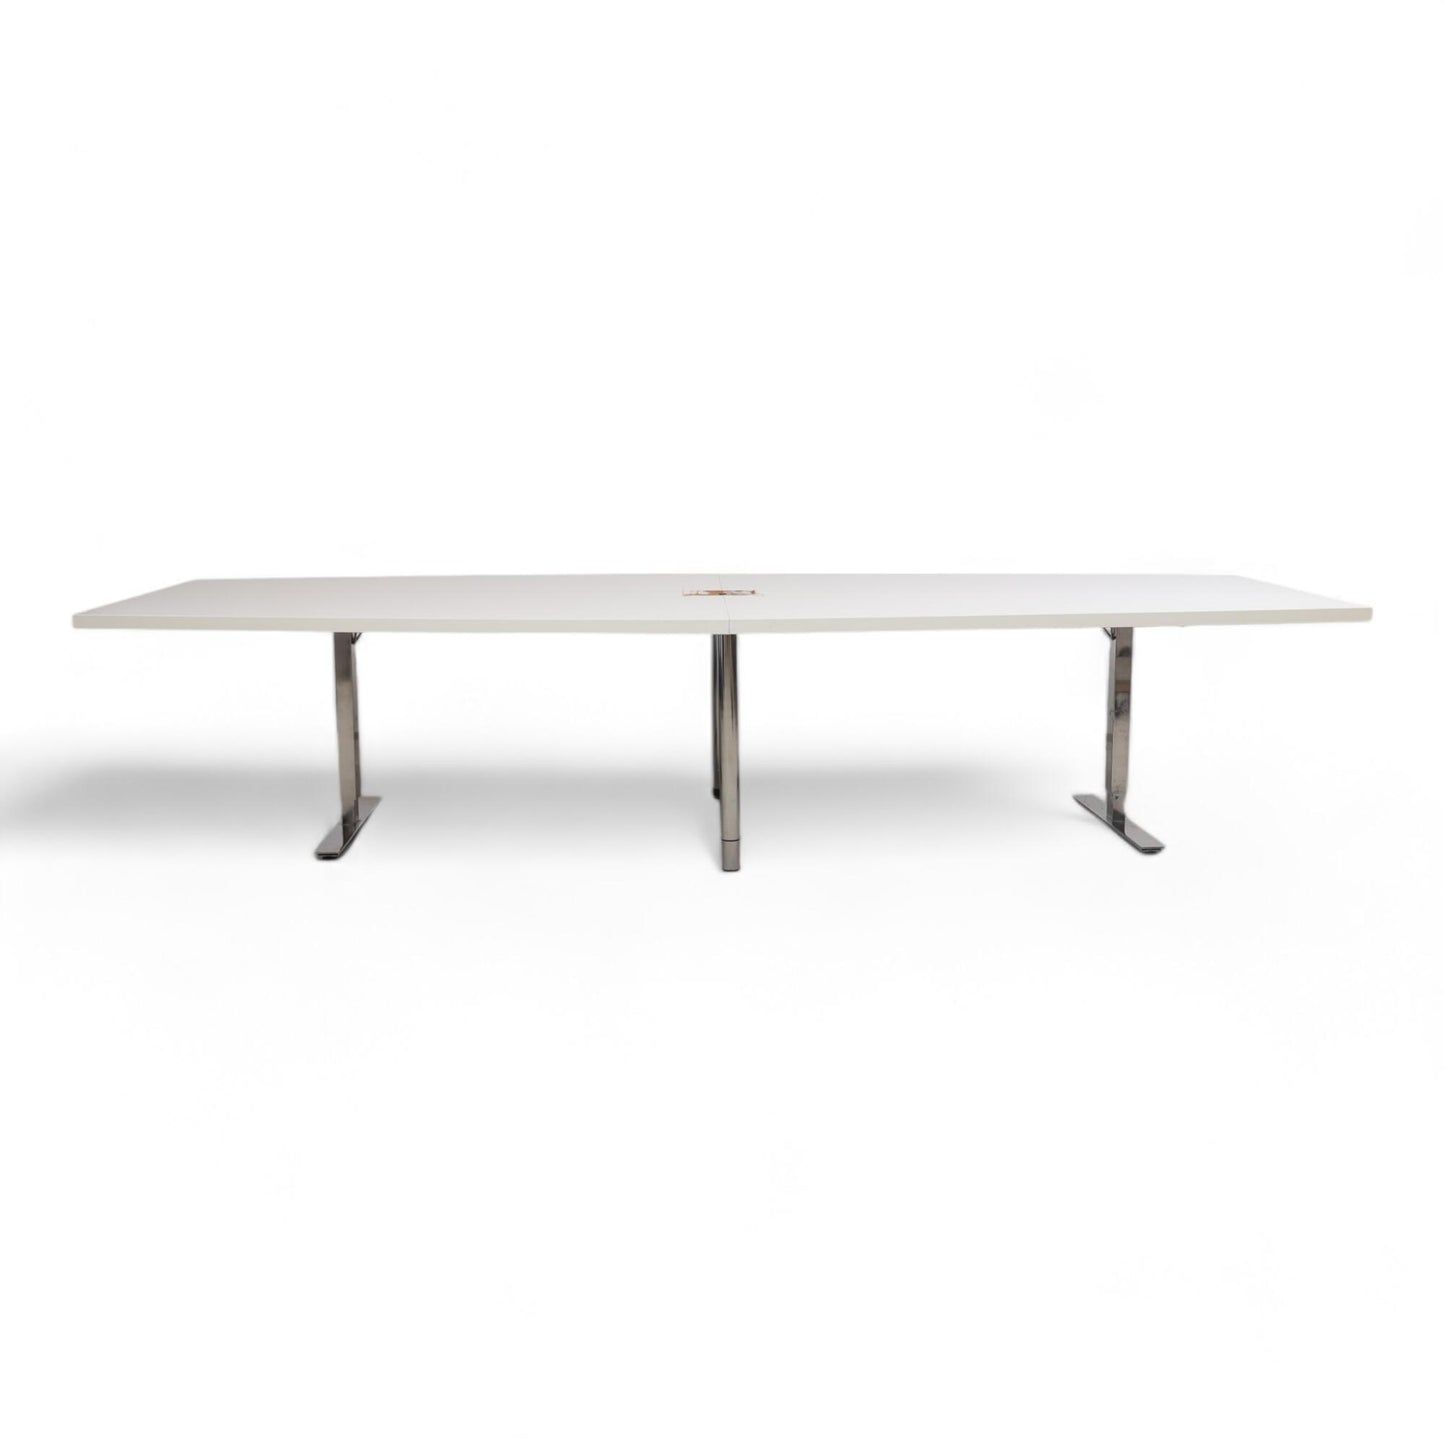 Kvalitetsikret | Hvitt møtebord fra IKEA, 340x145 cm